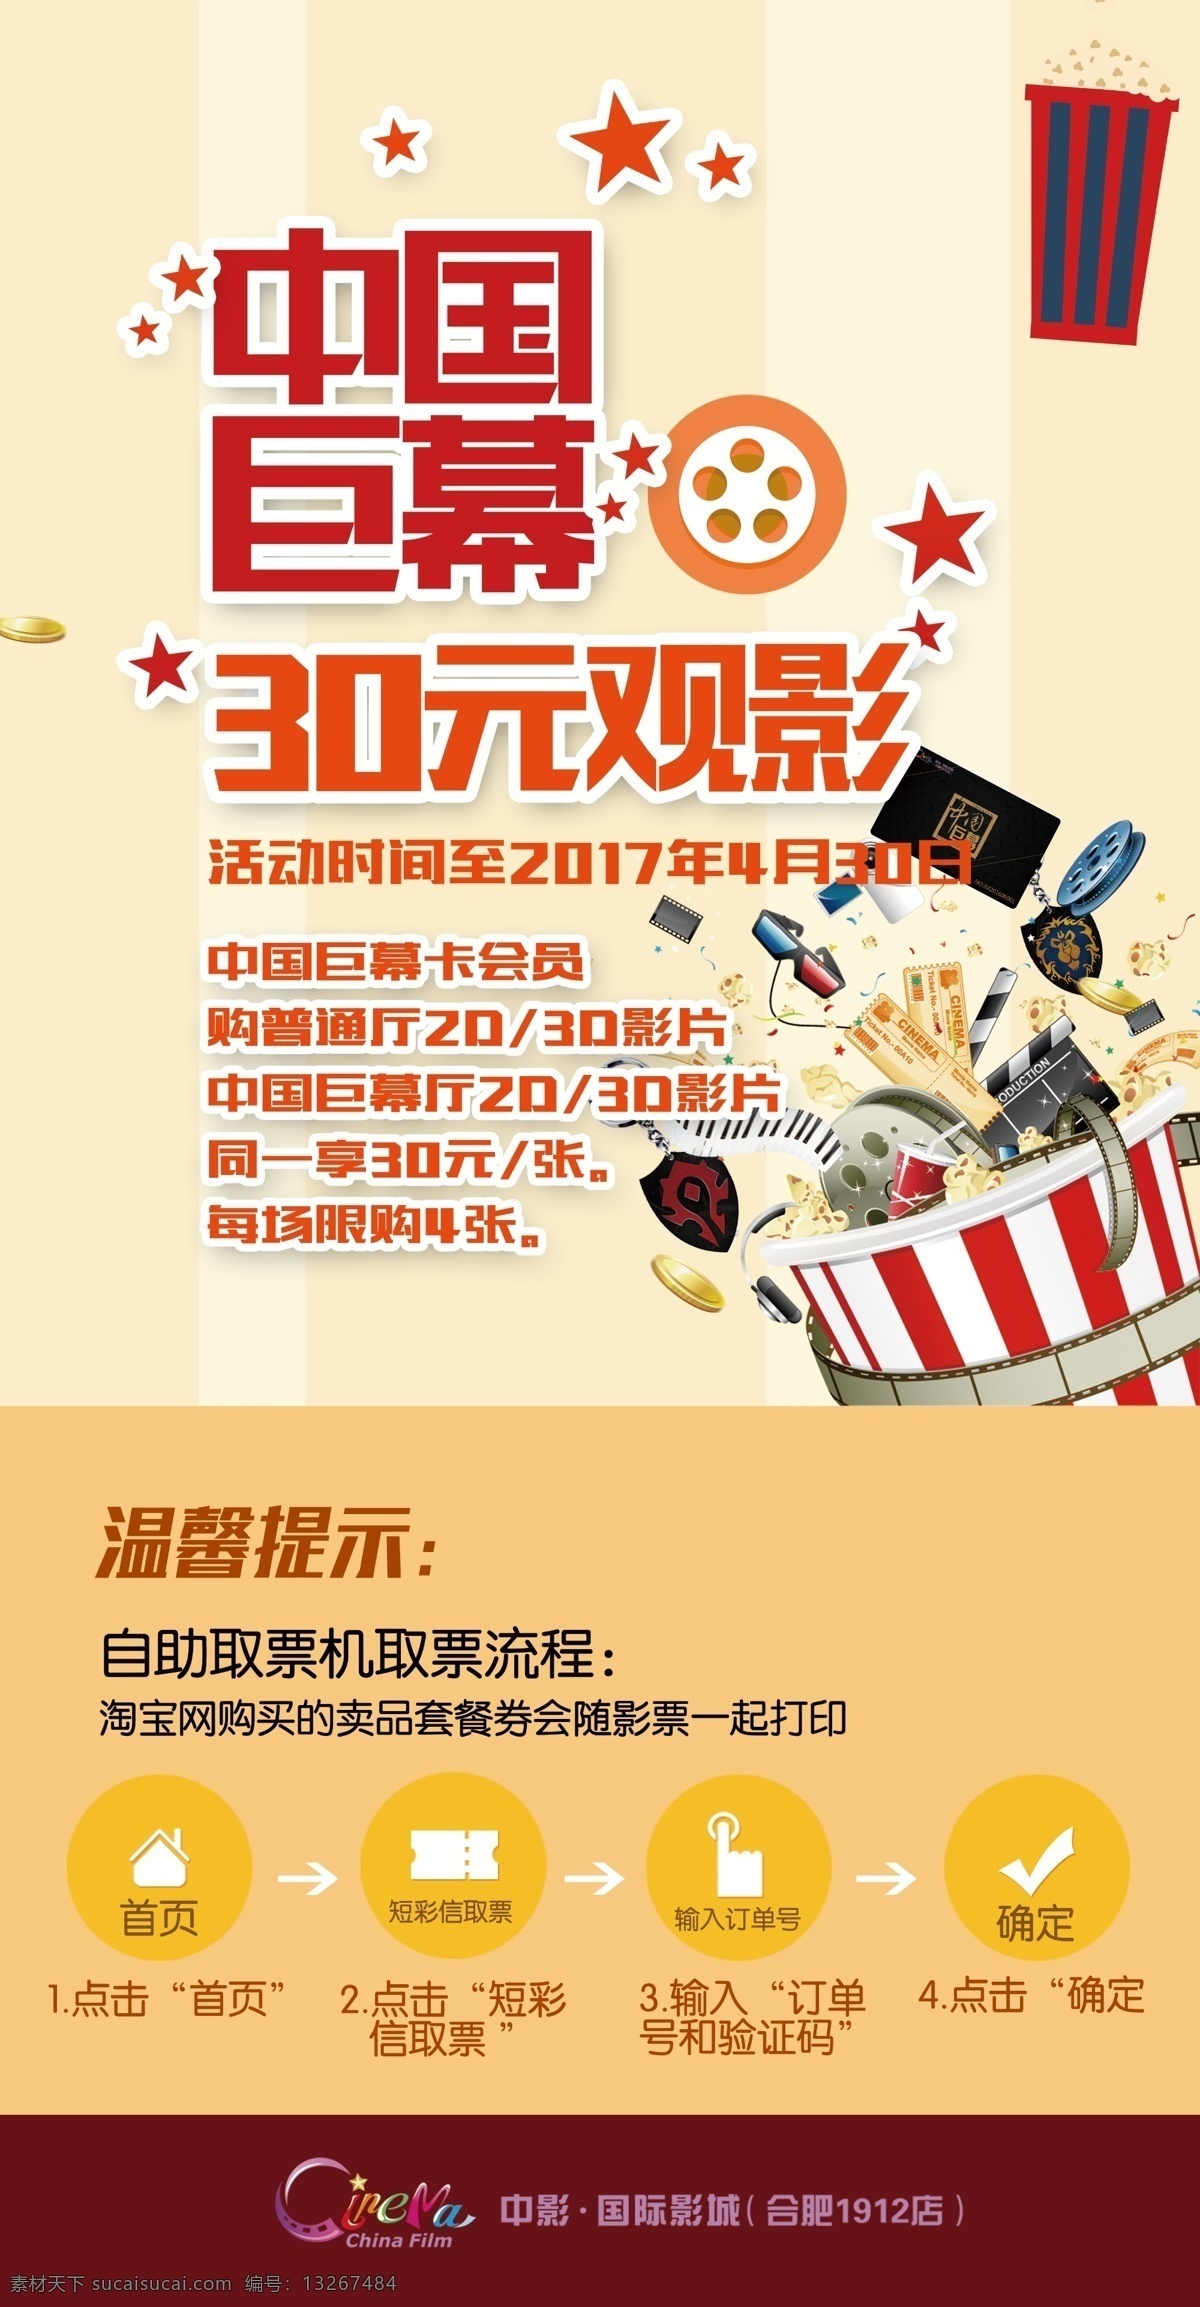 电影院 会员卡 特惠 海报 中国巨幕 特惠海报 取票机流程